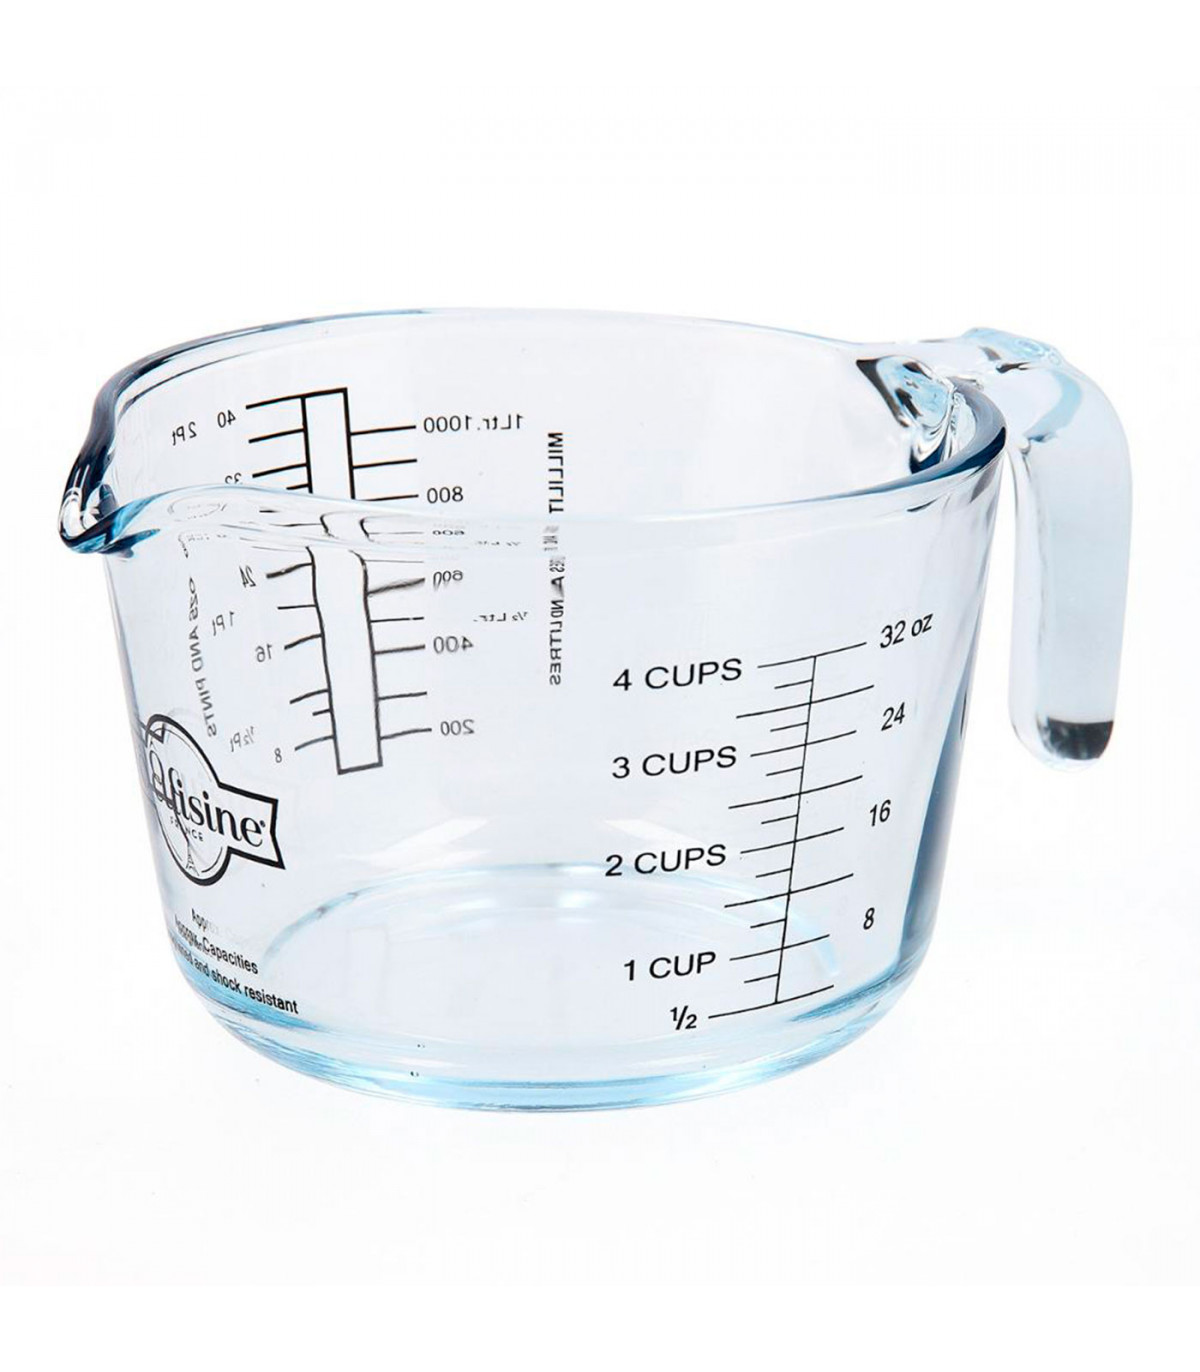 Jarra medidora de vidrio de 15,5 x 10,7 x 21 cm con capacidad de 1 litro.  Recipiente para medir, especial para labores de cocina